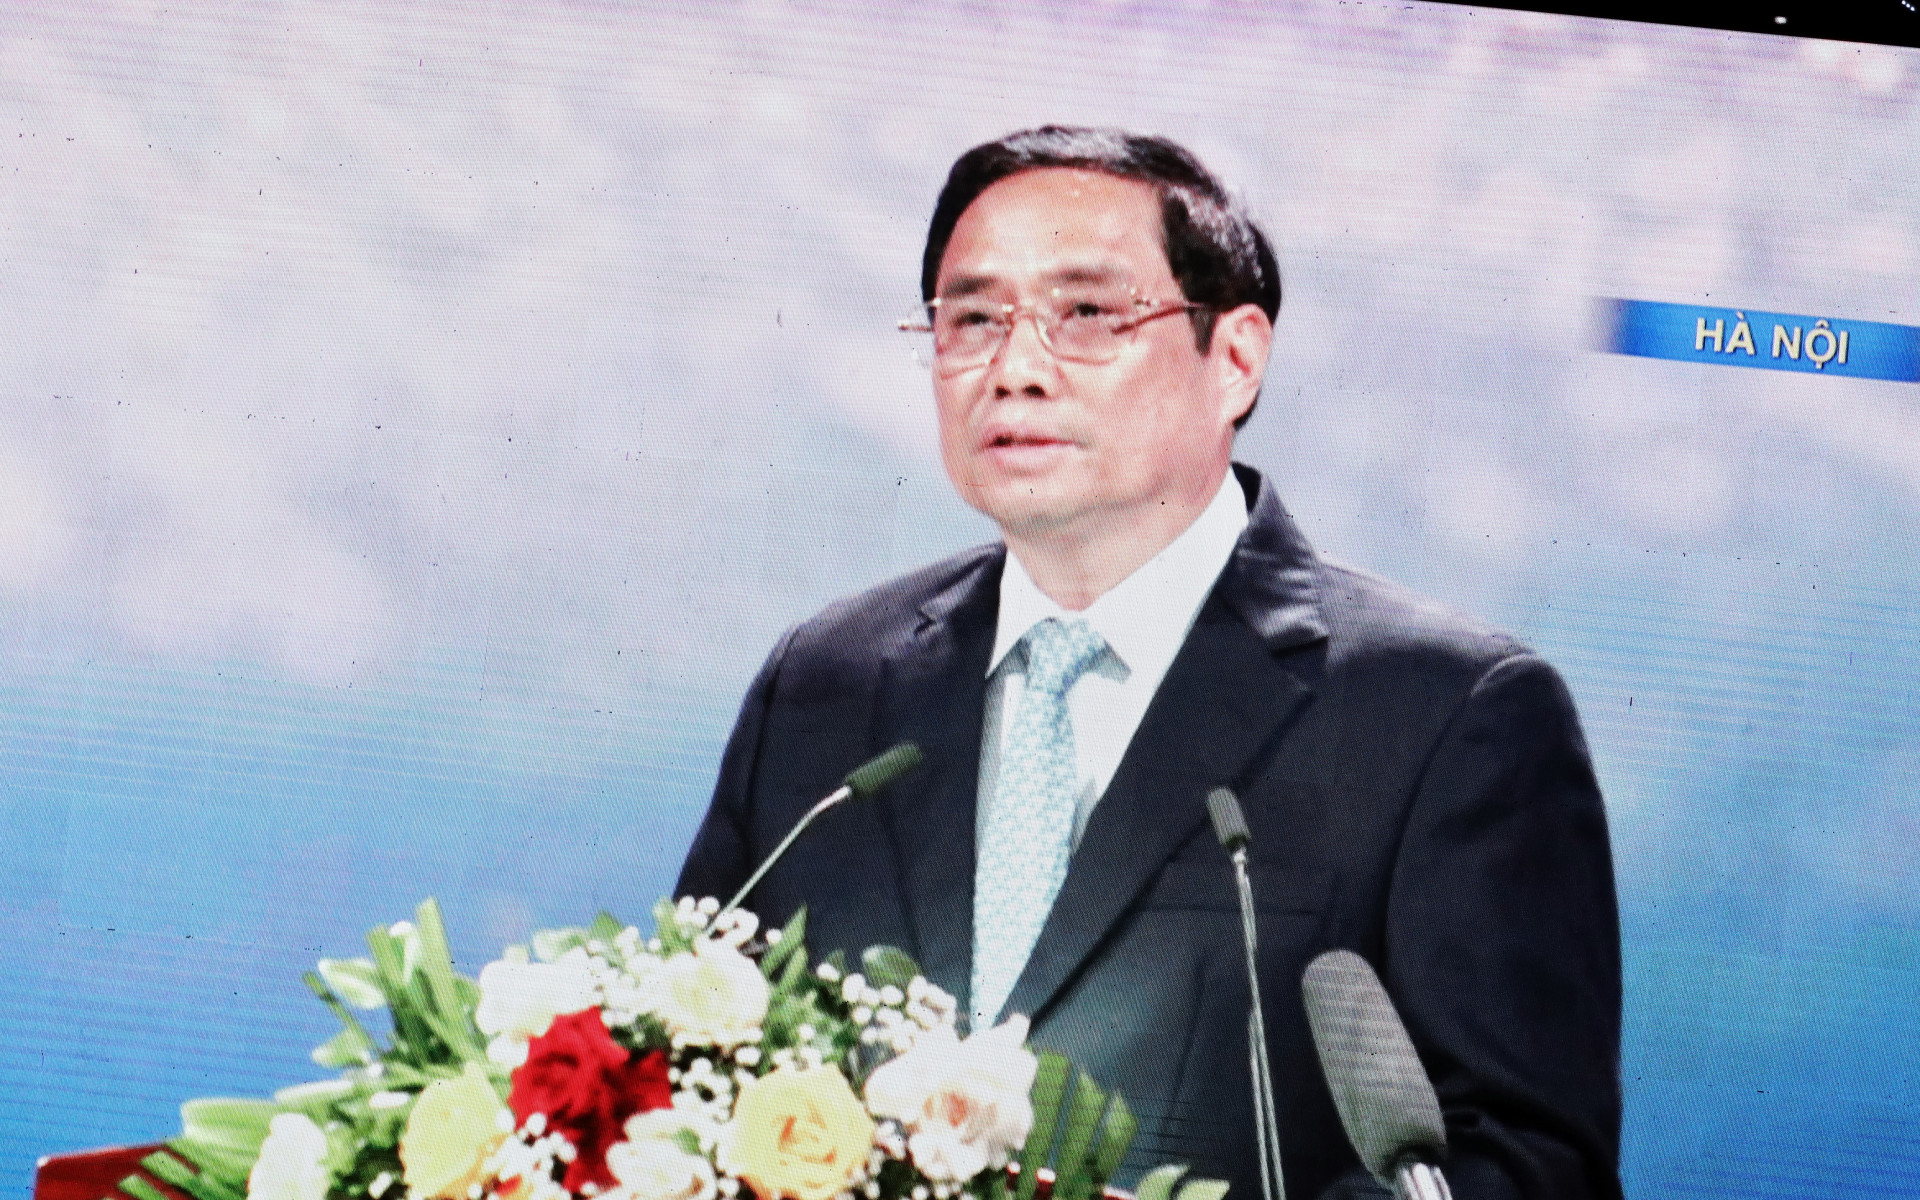 Thủ tướng Phạm Minh Chính phát biểu tại chương trình cầu truyền hình trực tiếp  